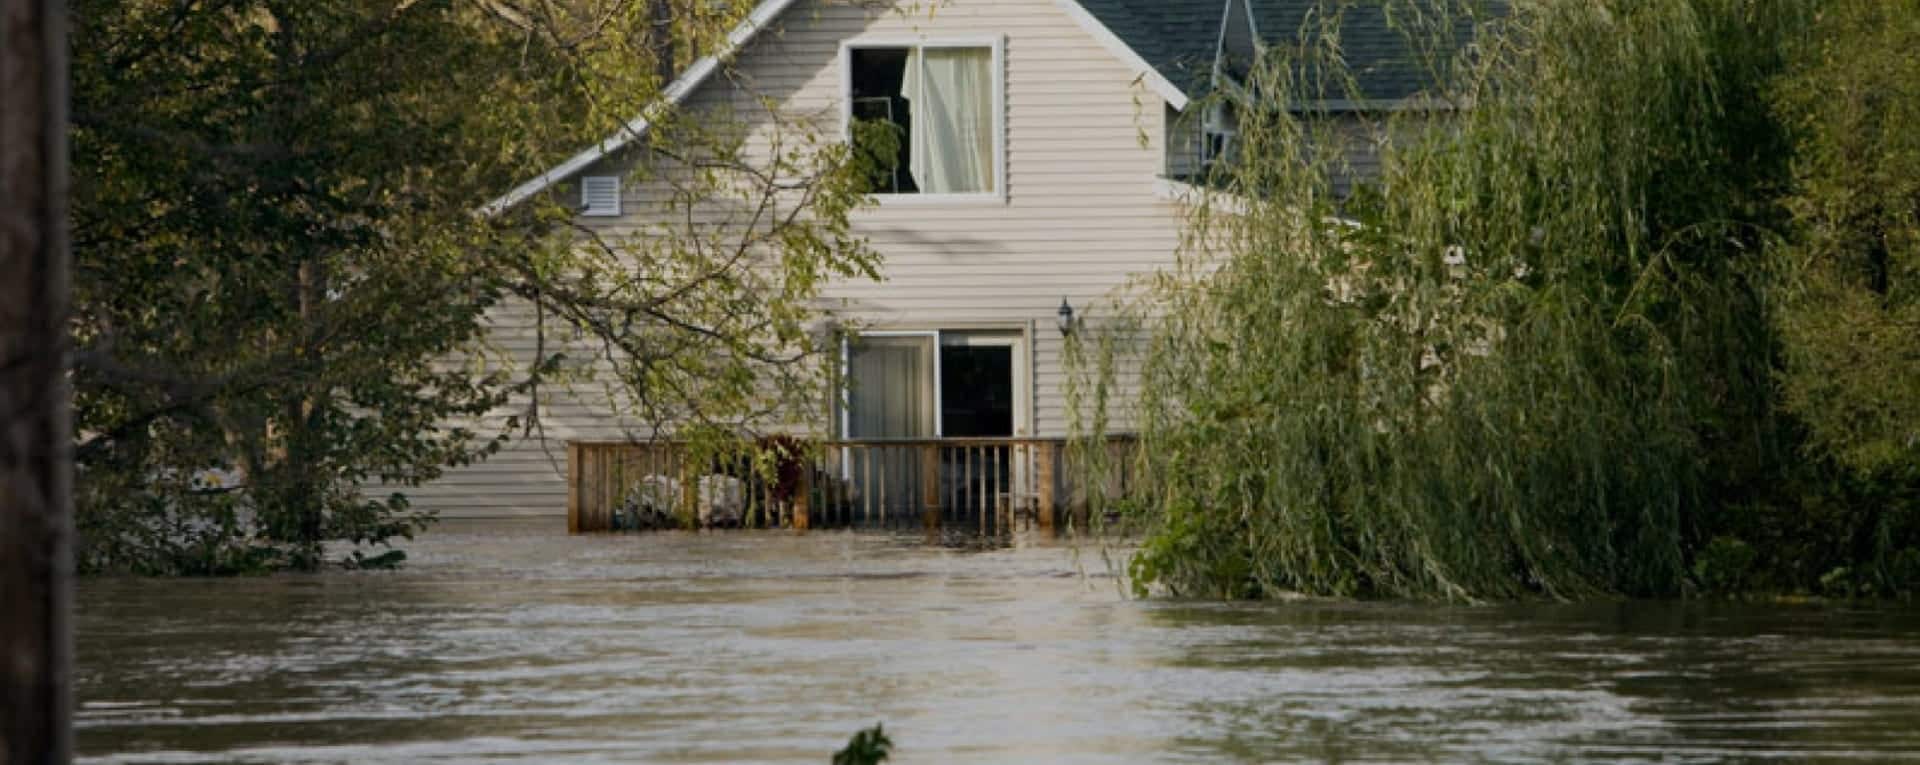 sewer mitigations, flood damage